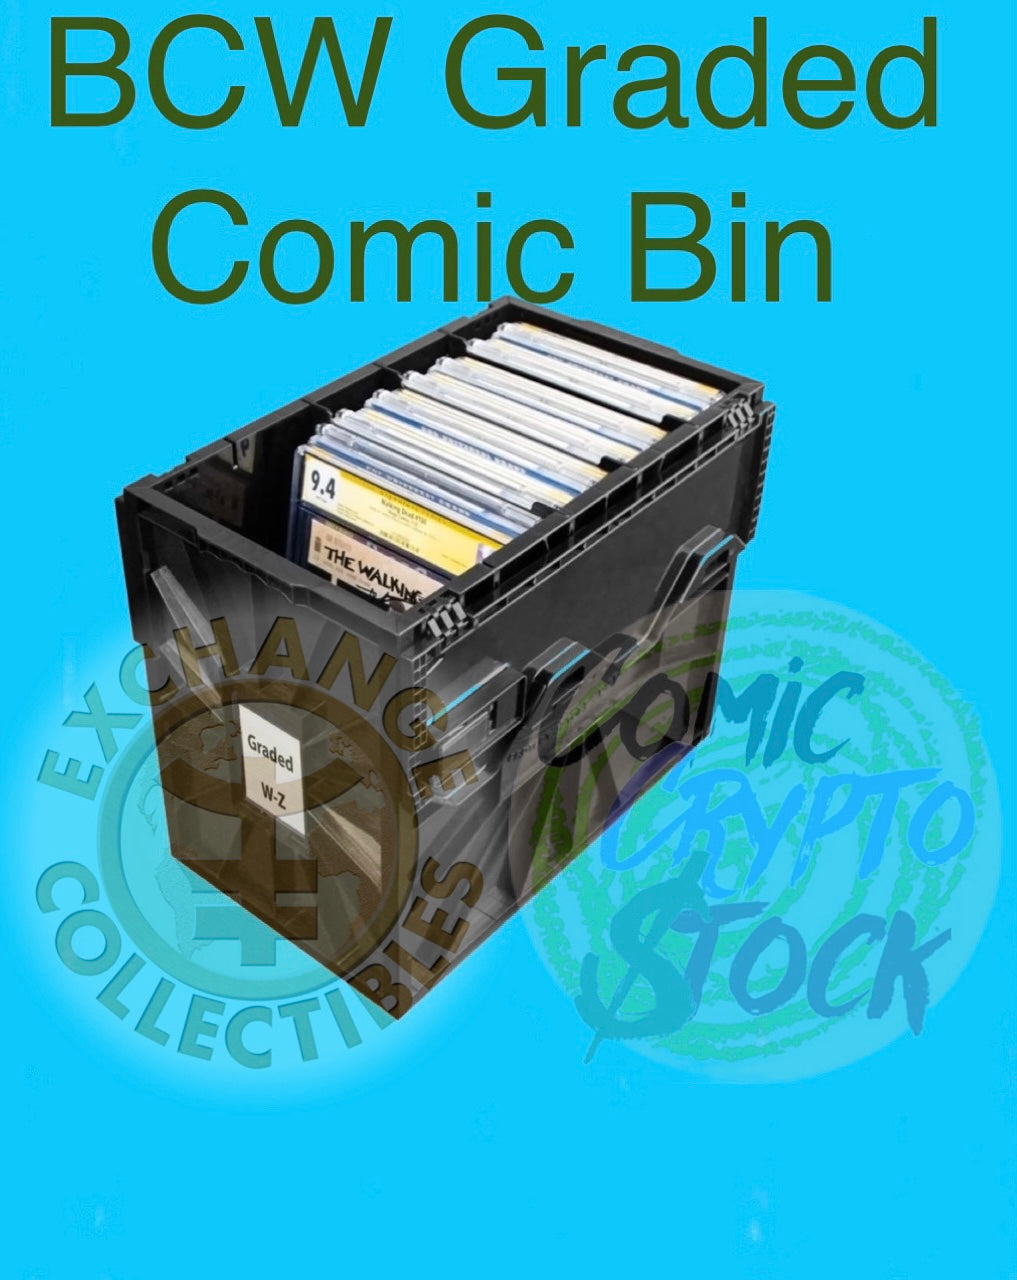 One BCW graded comic storage bin.